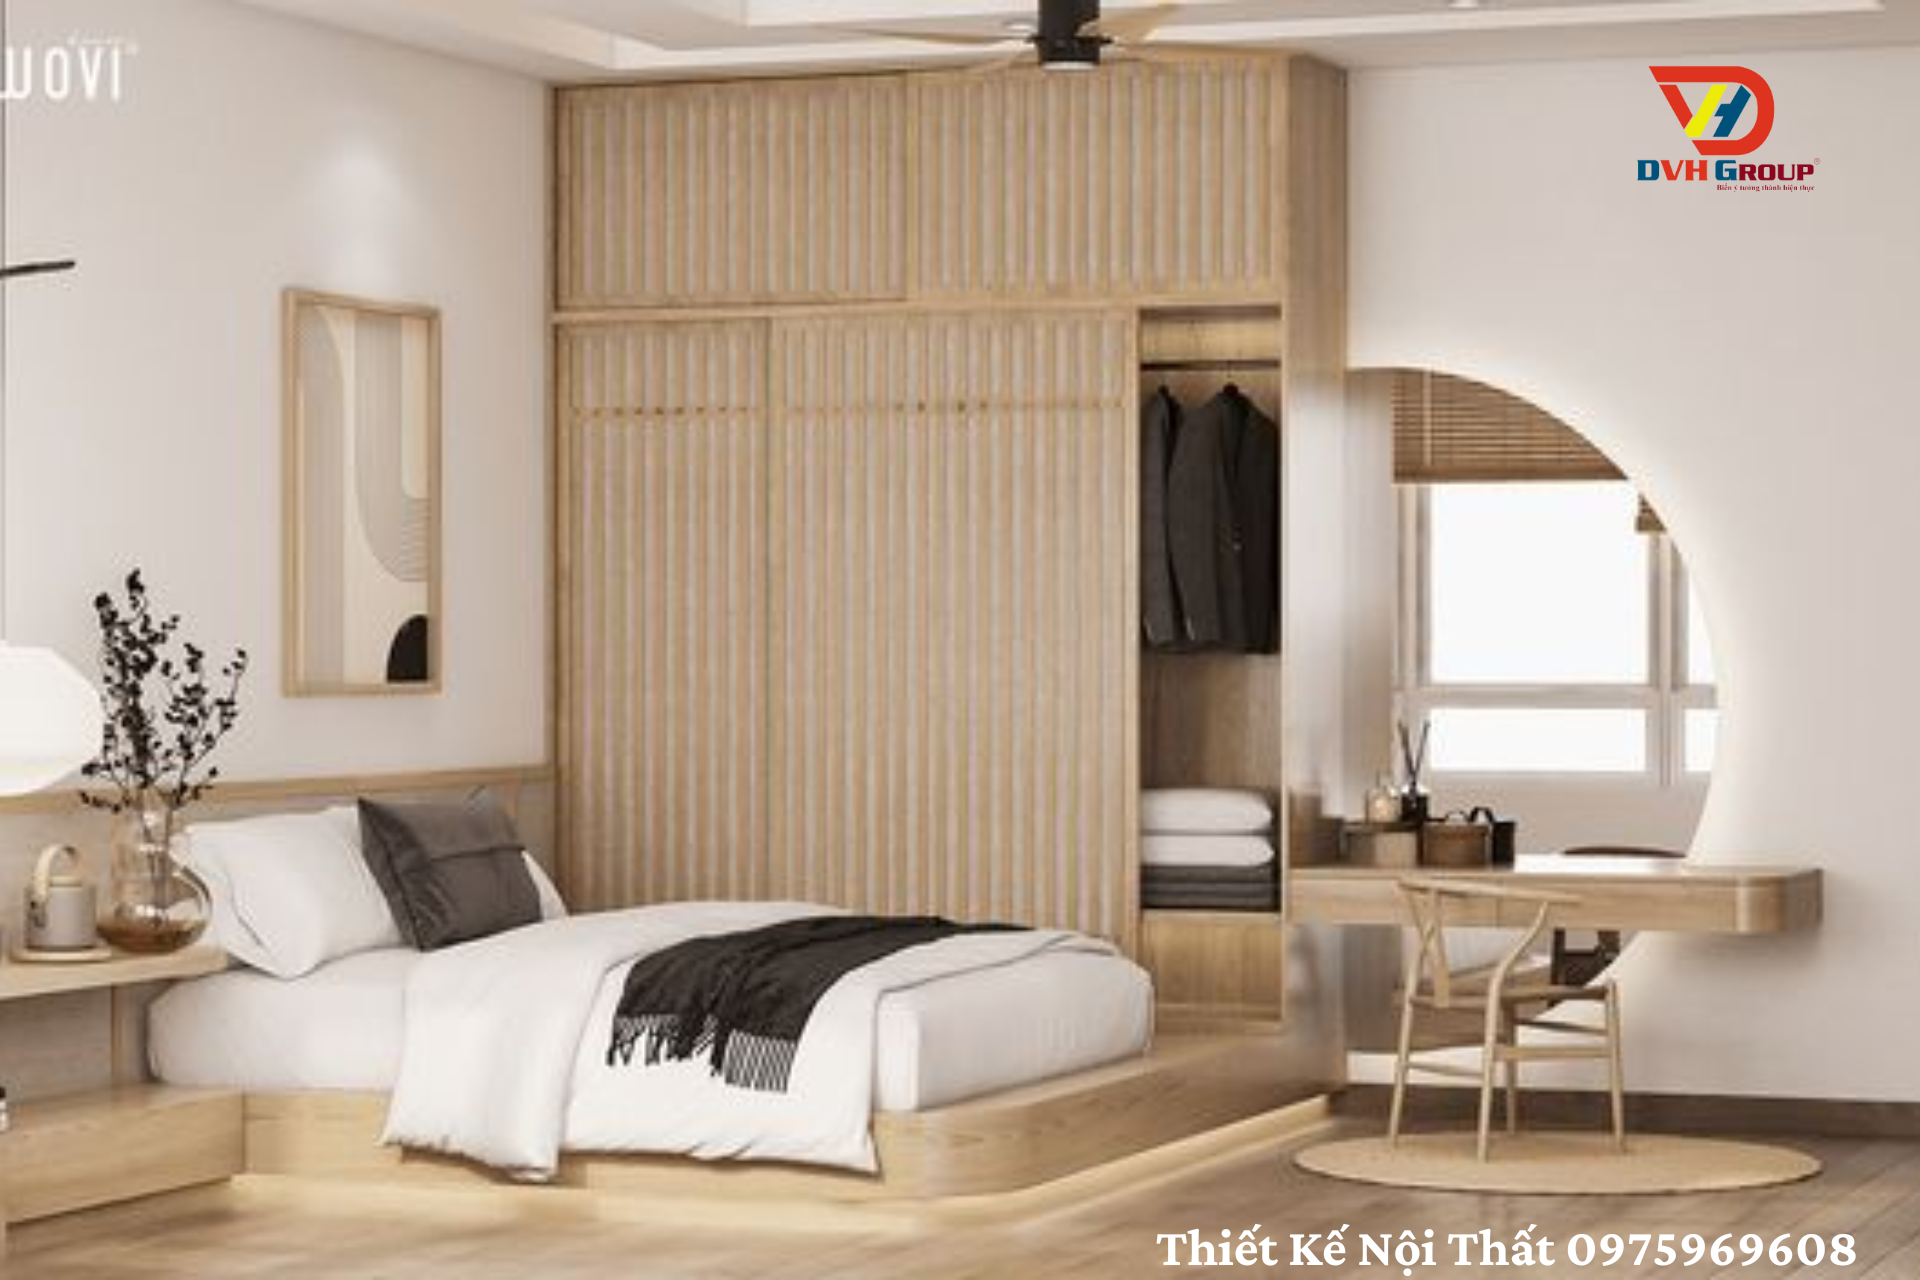 Phòng ngủ thiết kế theo phong cách nhật bản hiện đại được nhiều bạn trẻ ưa chuộng